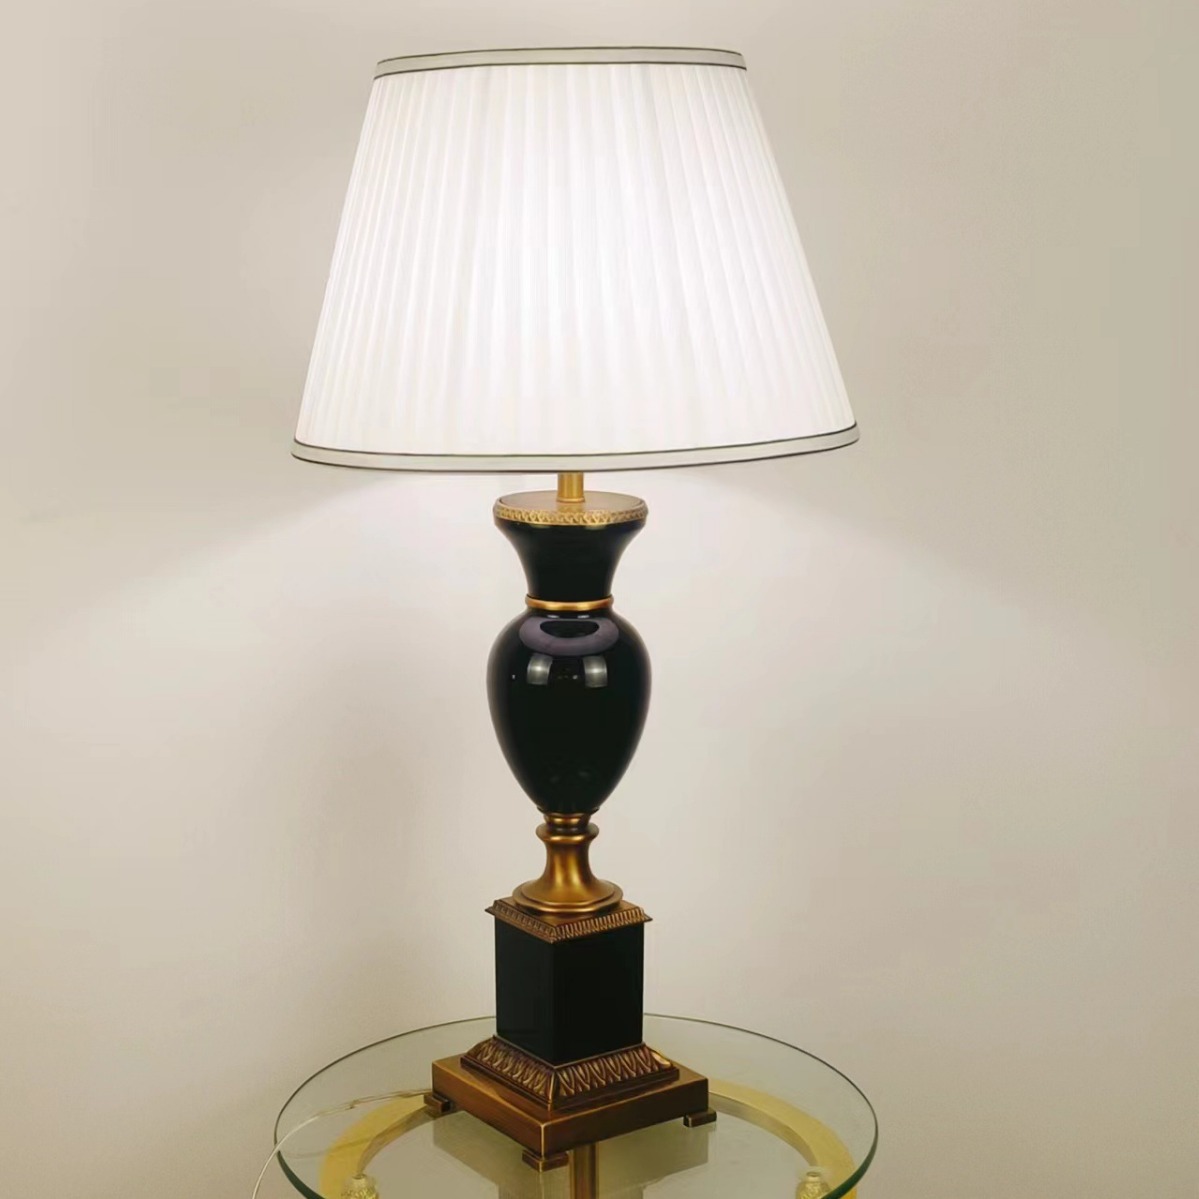 新古典欧式水晶床头台灯简约创意铜台灯个性装饰新款客厅卧室书